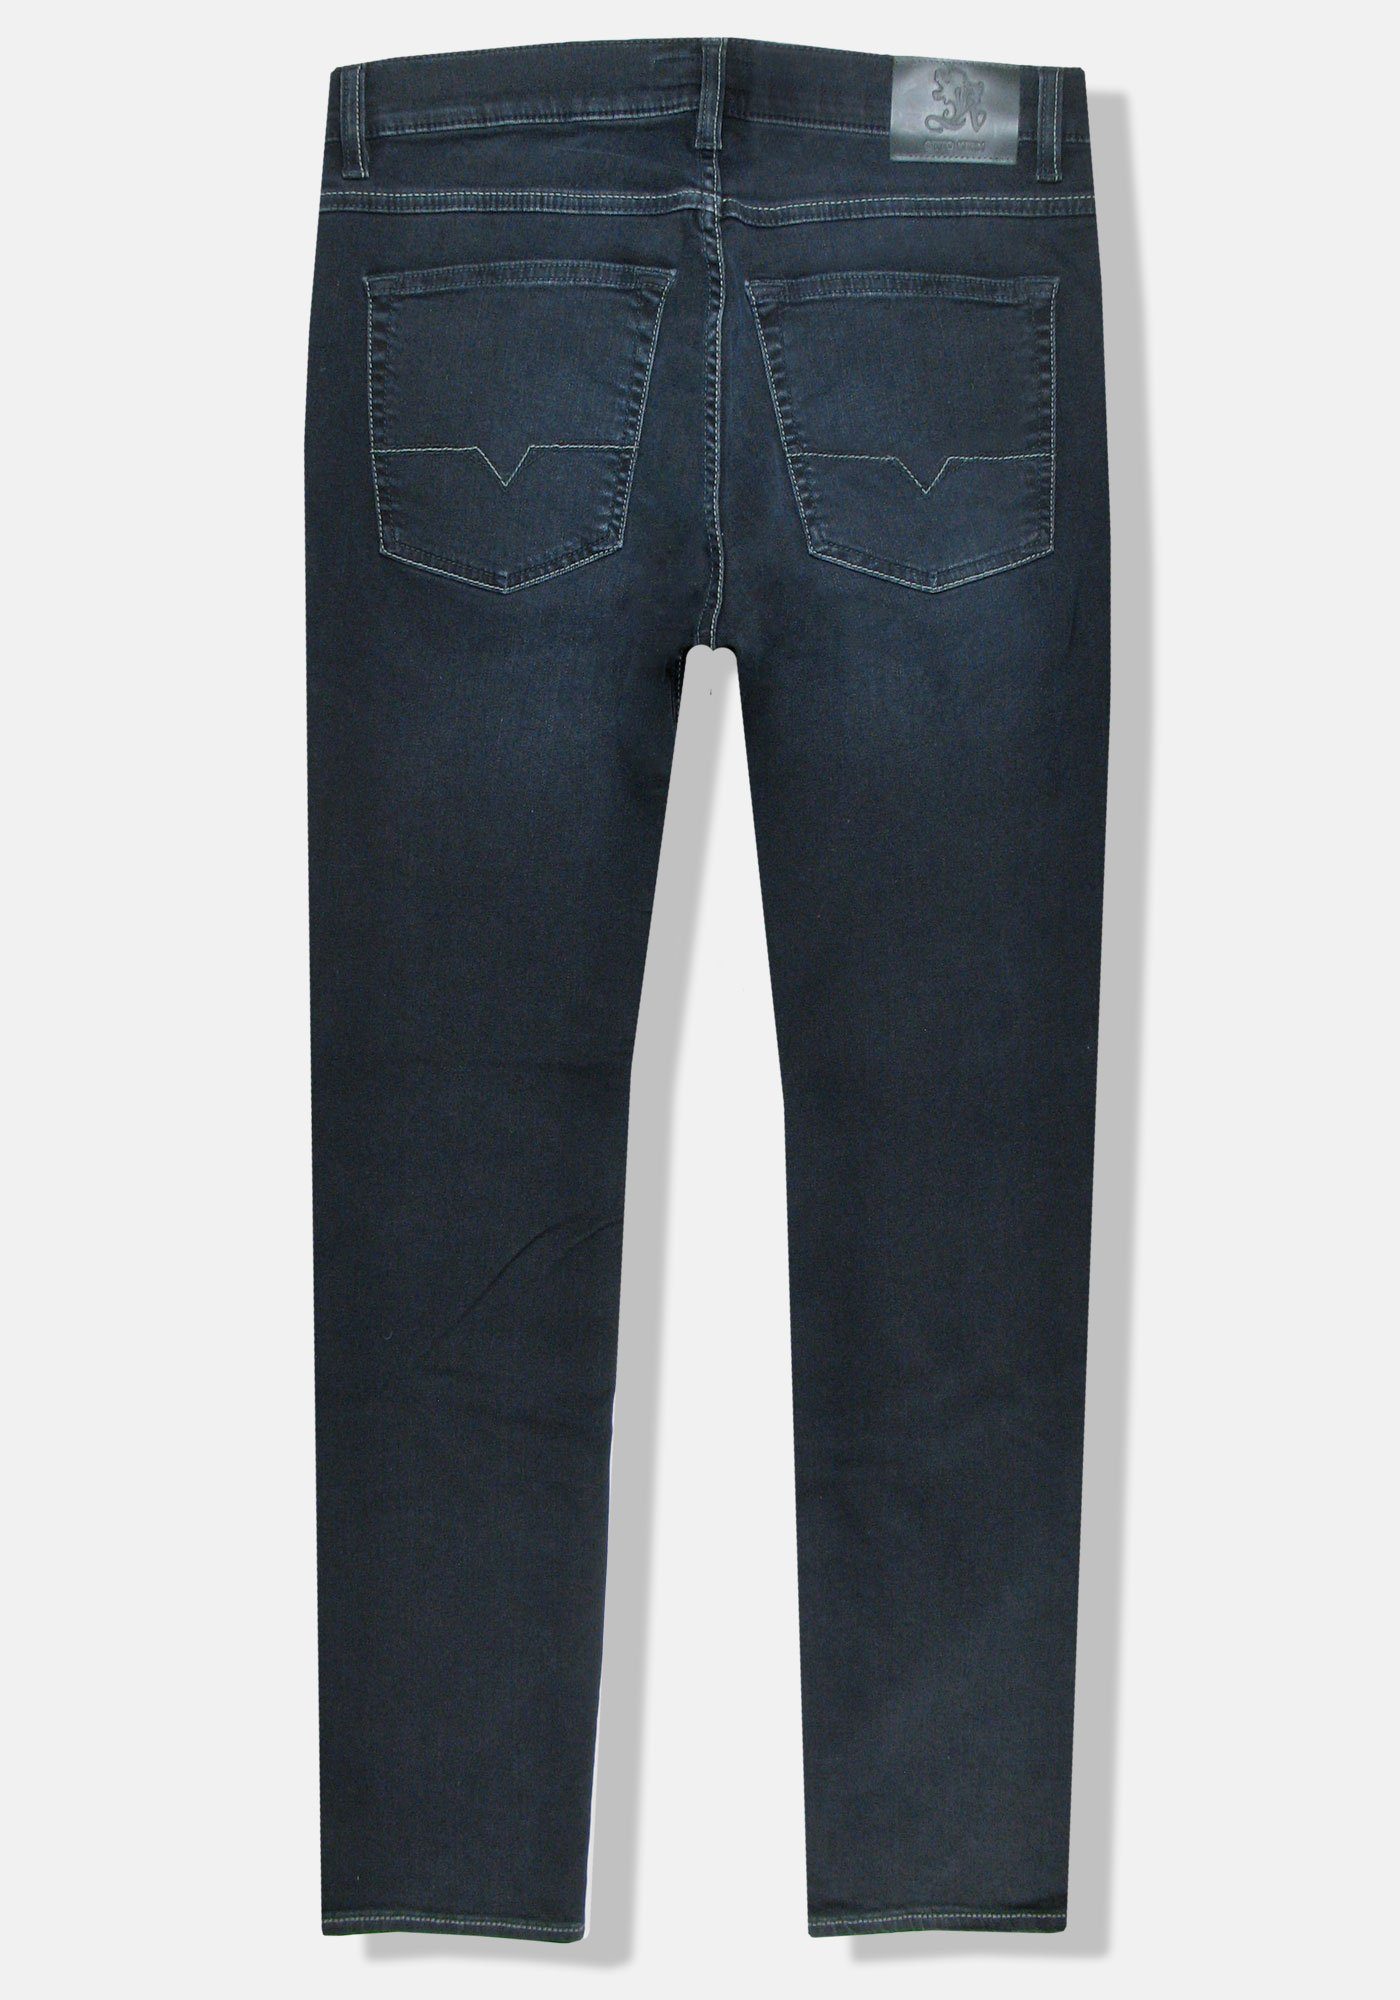 Otto Kern Kern 5-Pocket-Jeans Blue John Night Denim Pure Flex